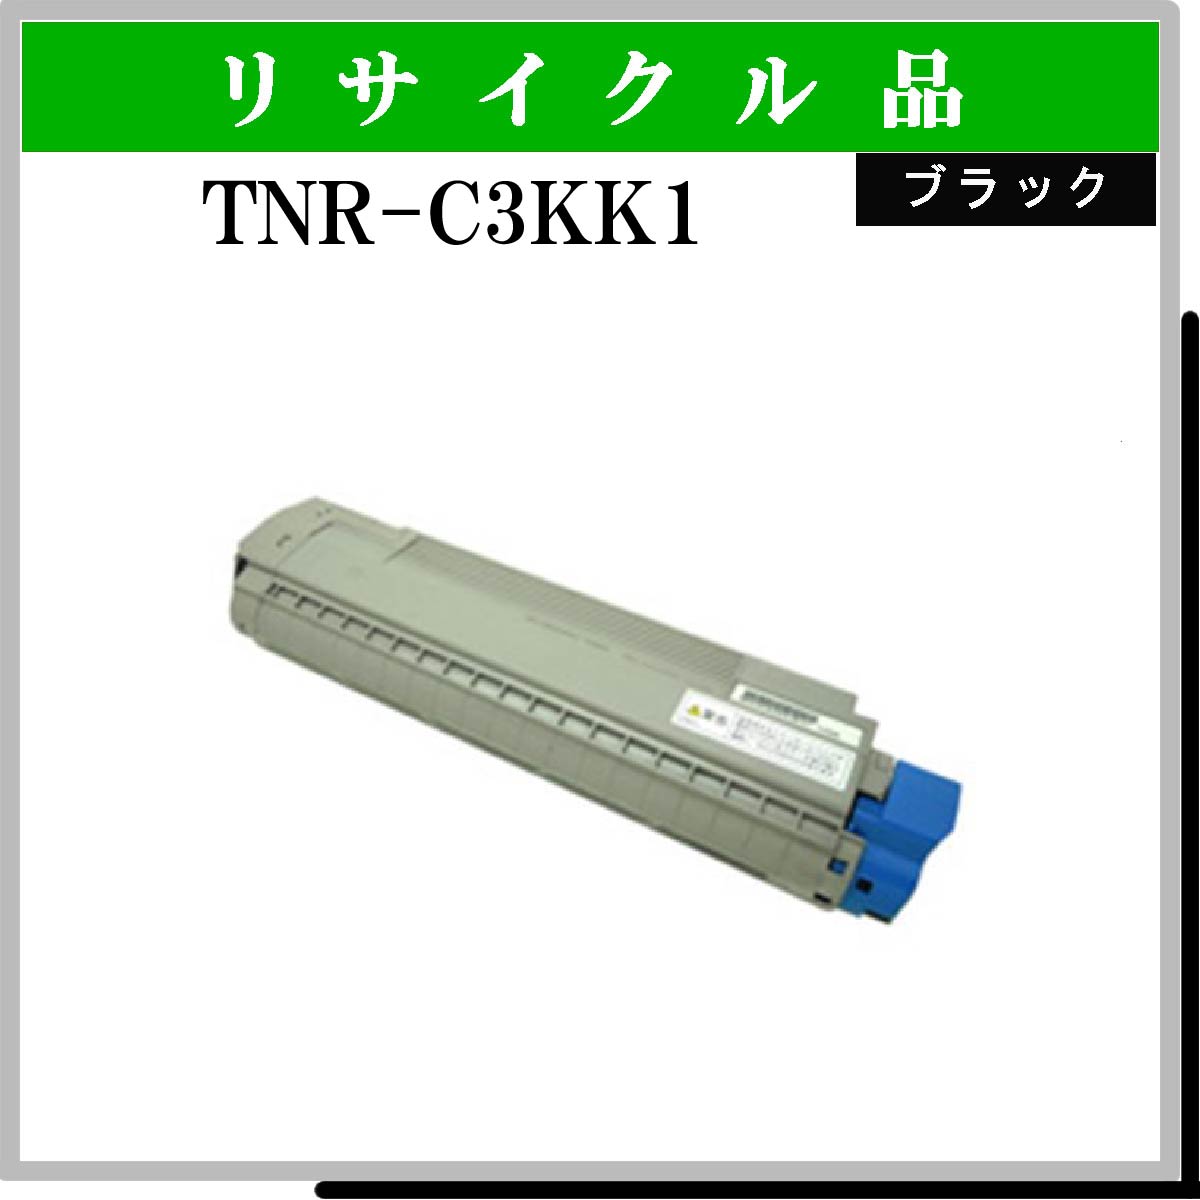 TNR-C3KK1